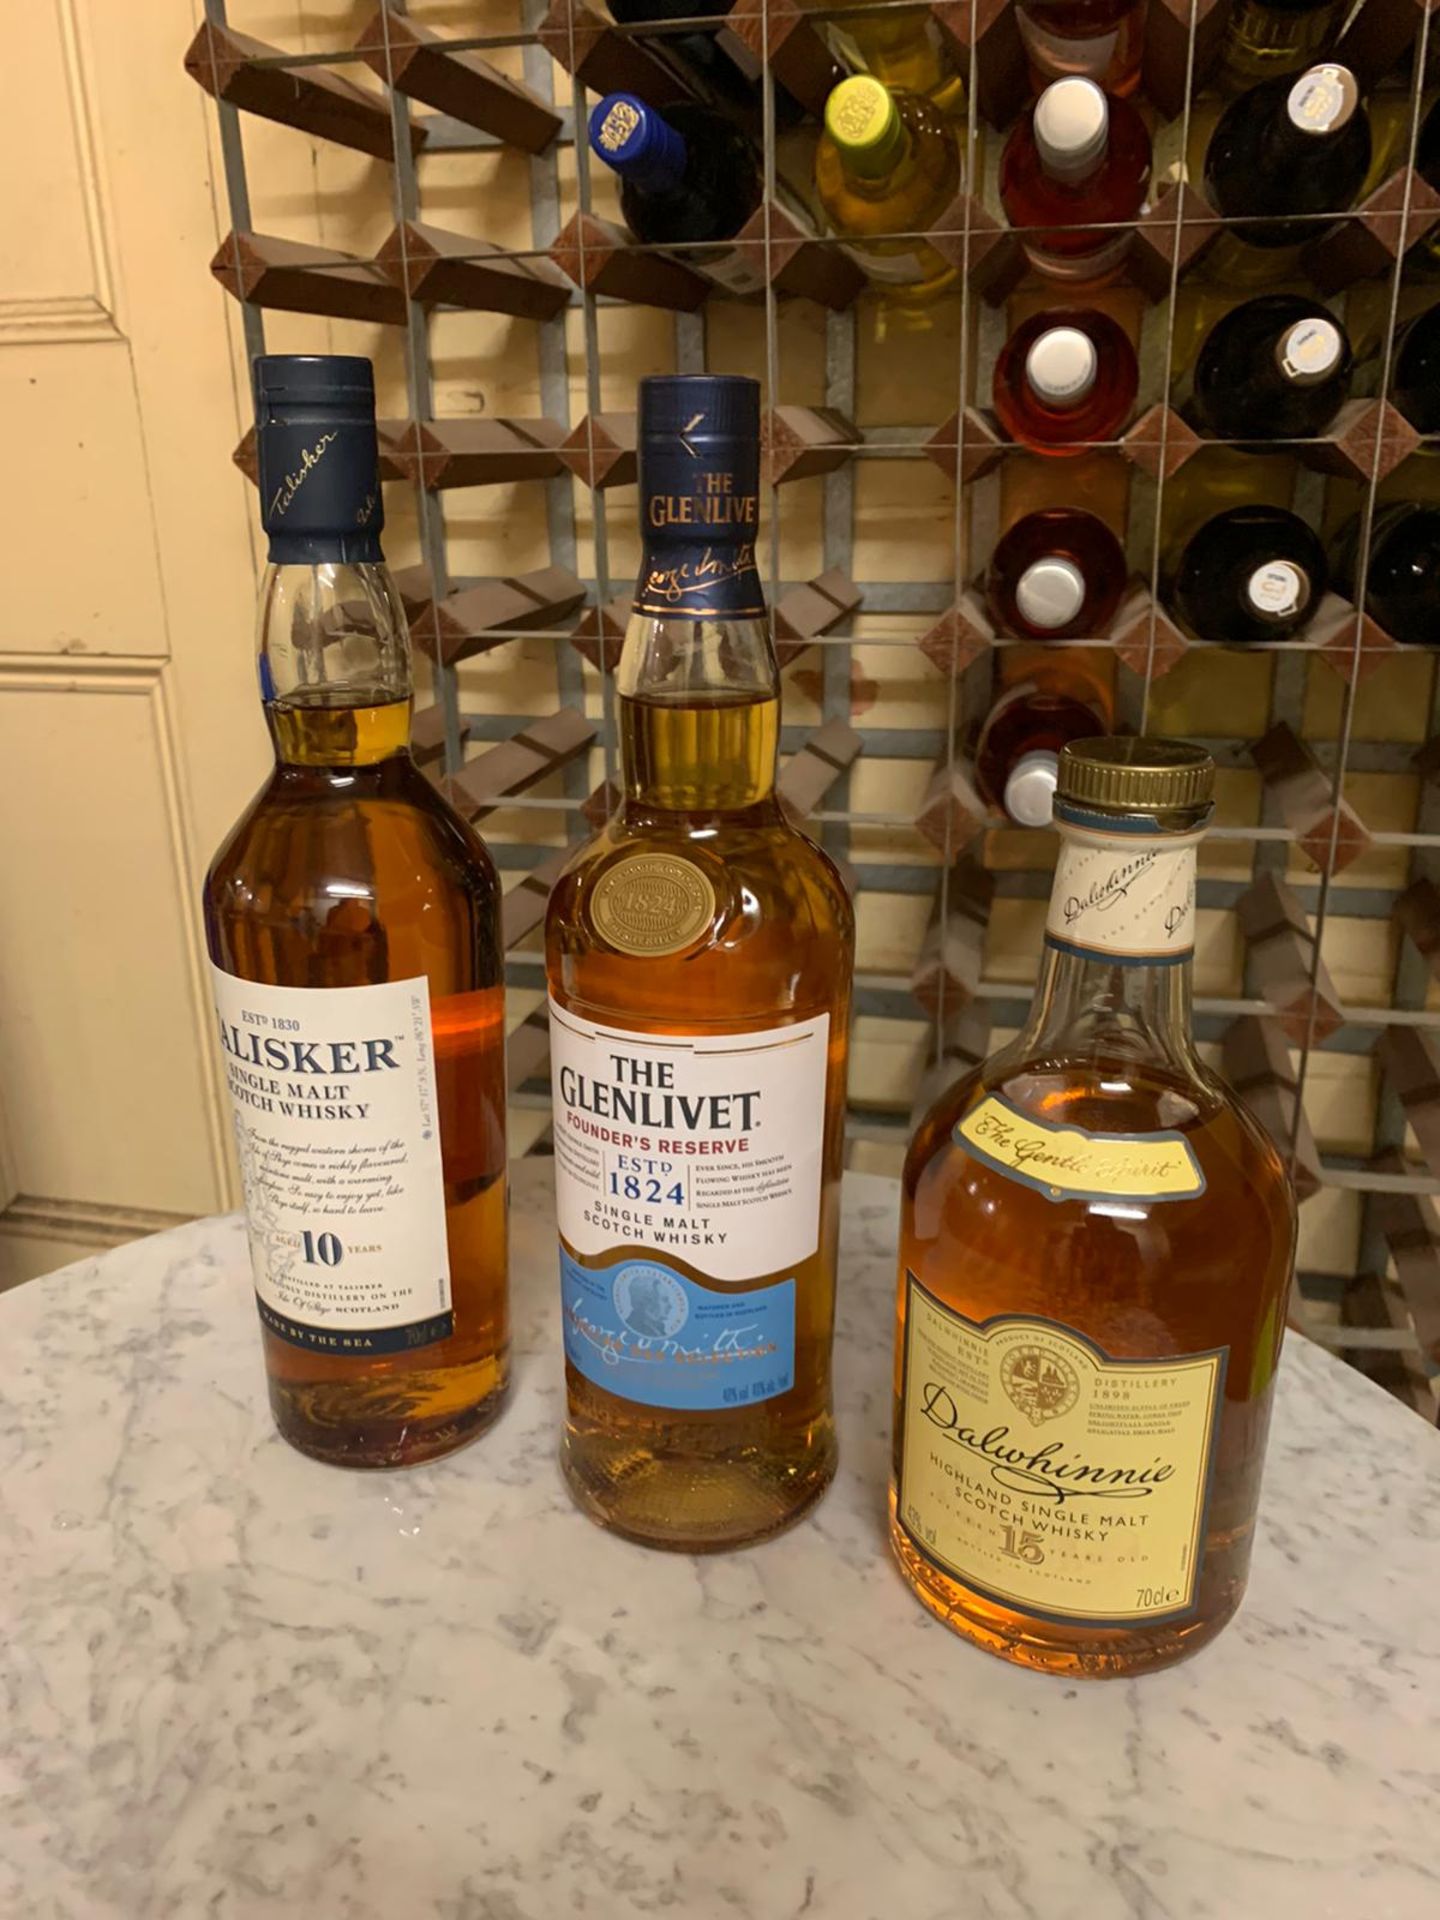 3 x sealed bottles - The Glenlivet Founder's Reserve Single Malt Scotch Whisky 70cl